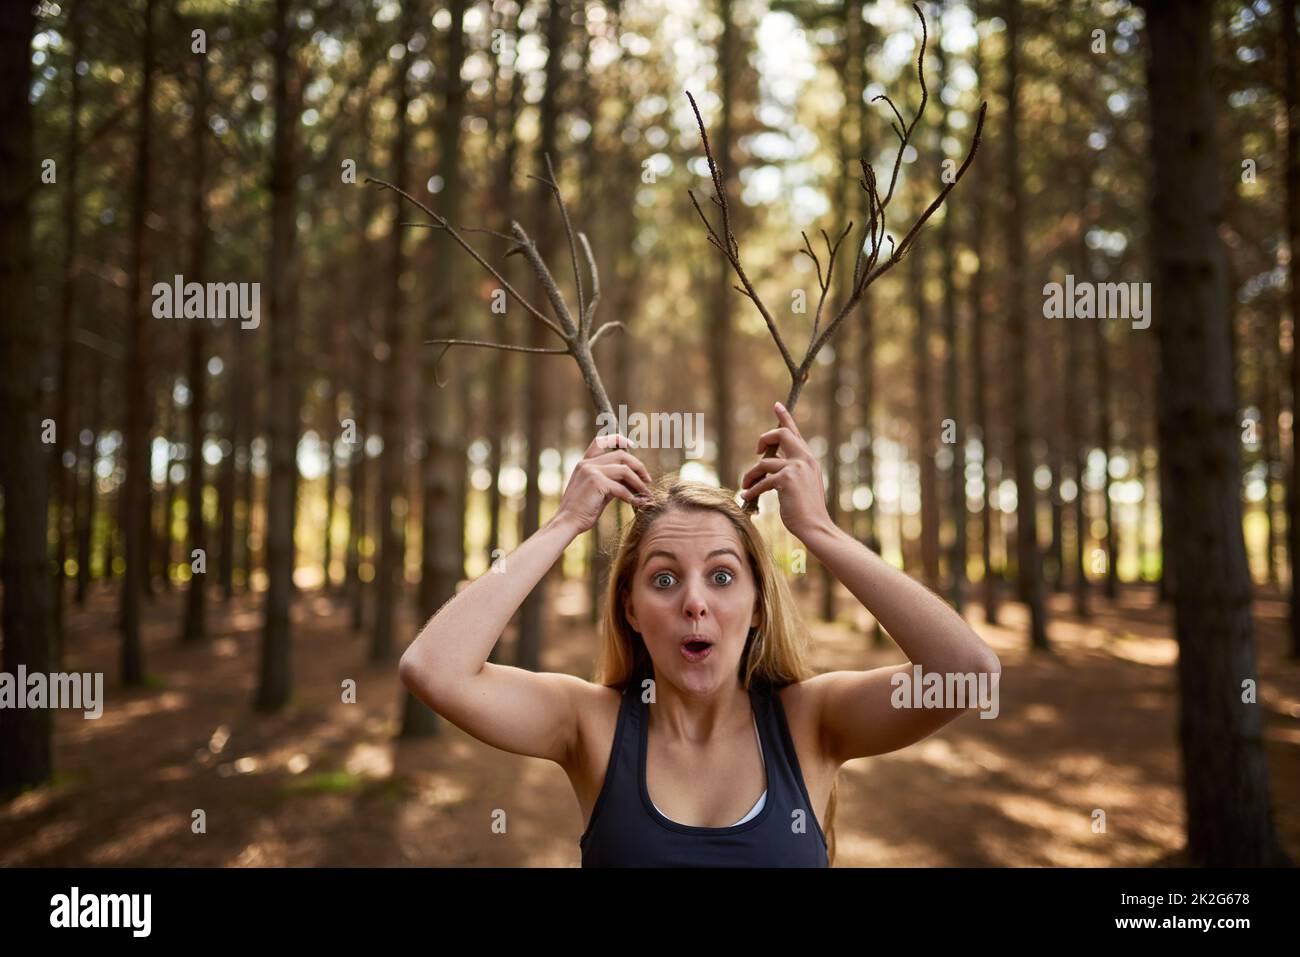 Dumm im Wald. Porträt einer verspielten jungen Frau, die wie Geweihe im Wald Äste hält. Stockfoto